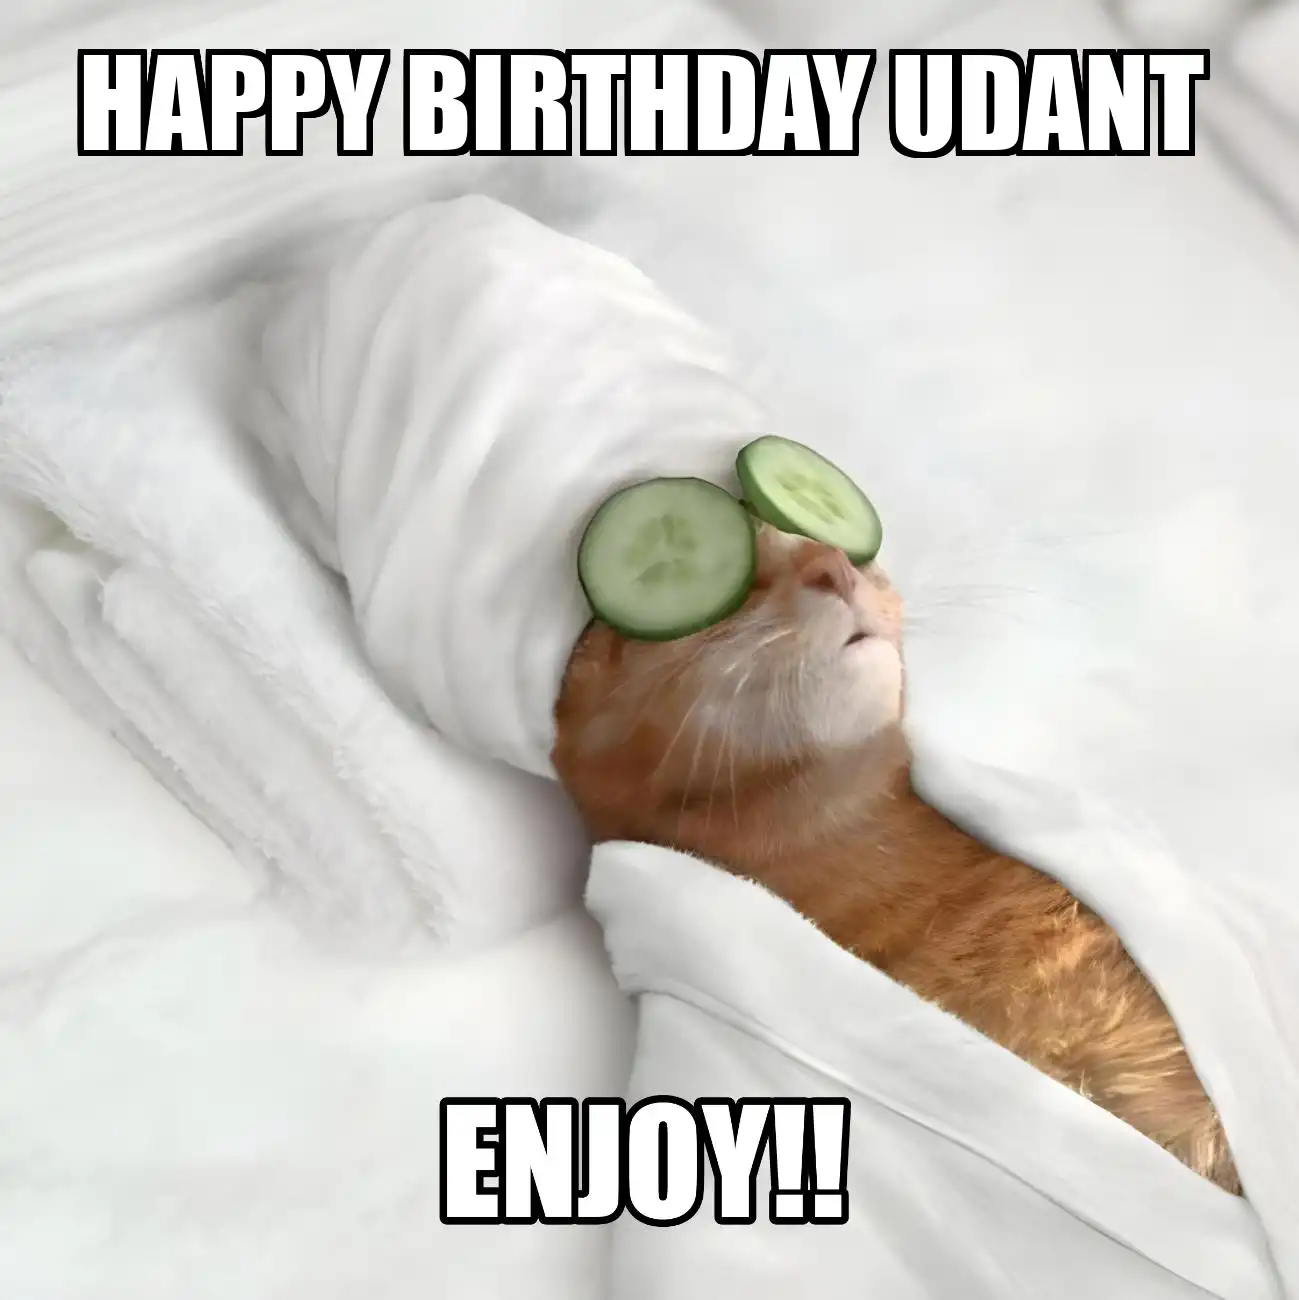 Happy Birthday Udant Enjoy Cat Meme